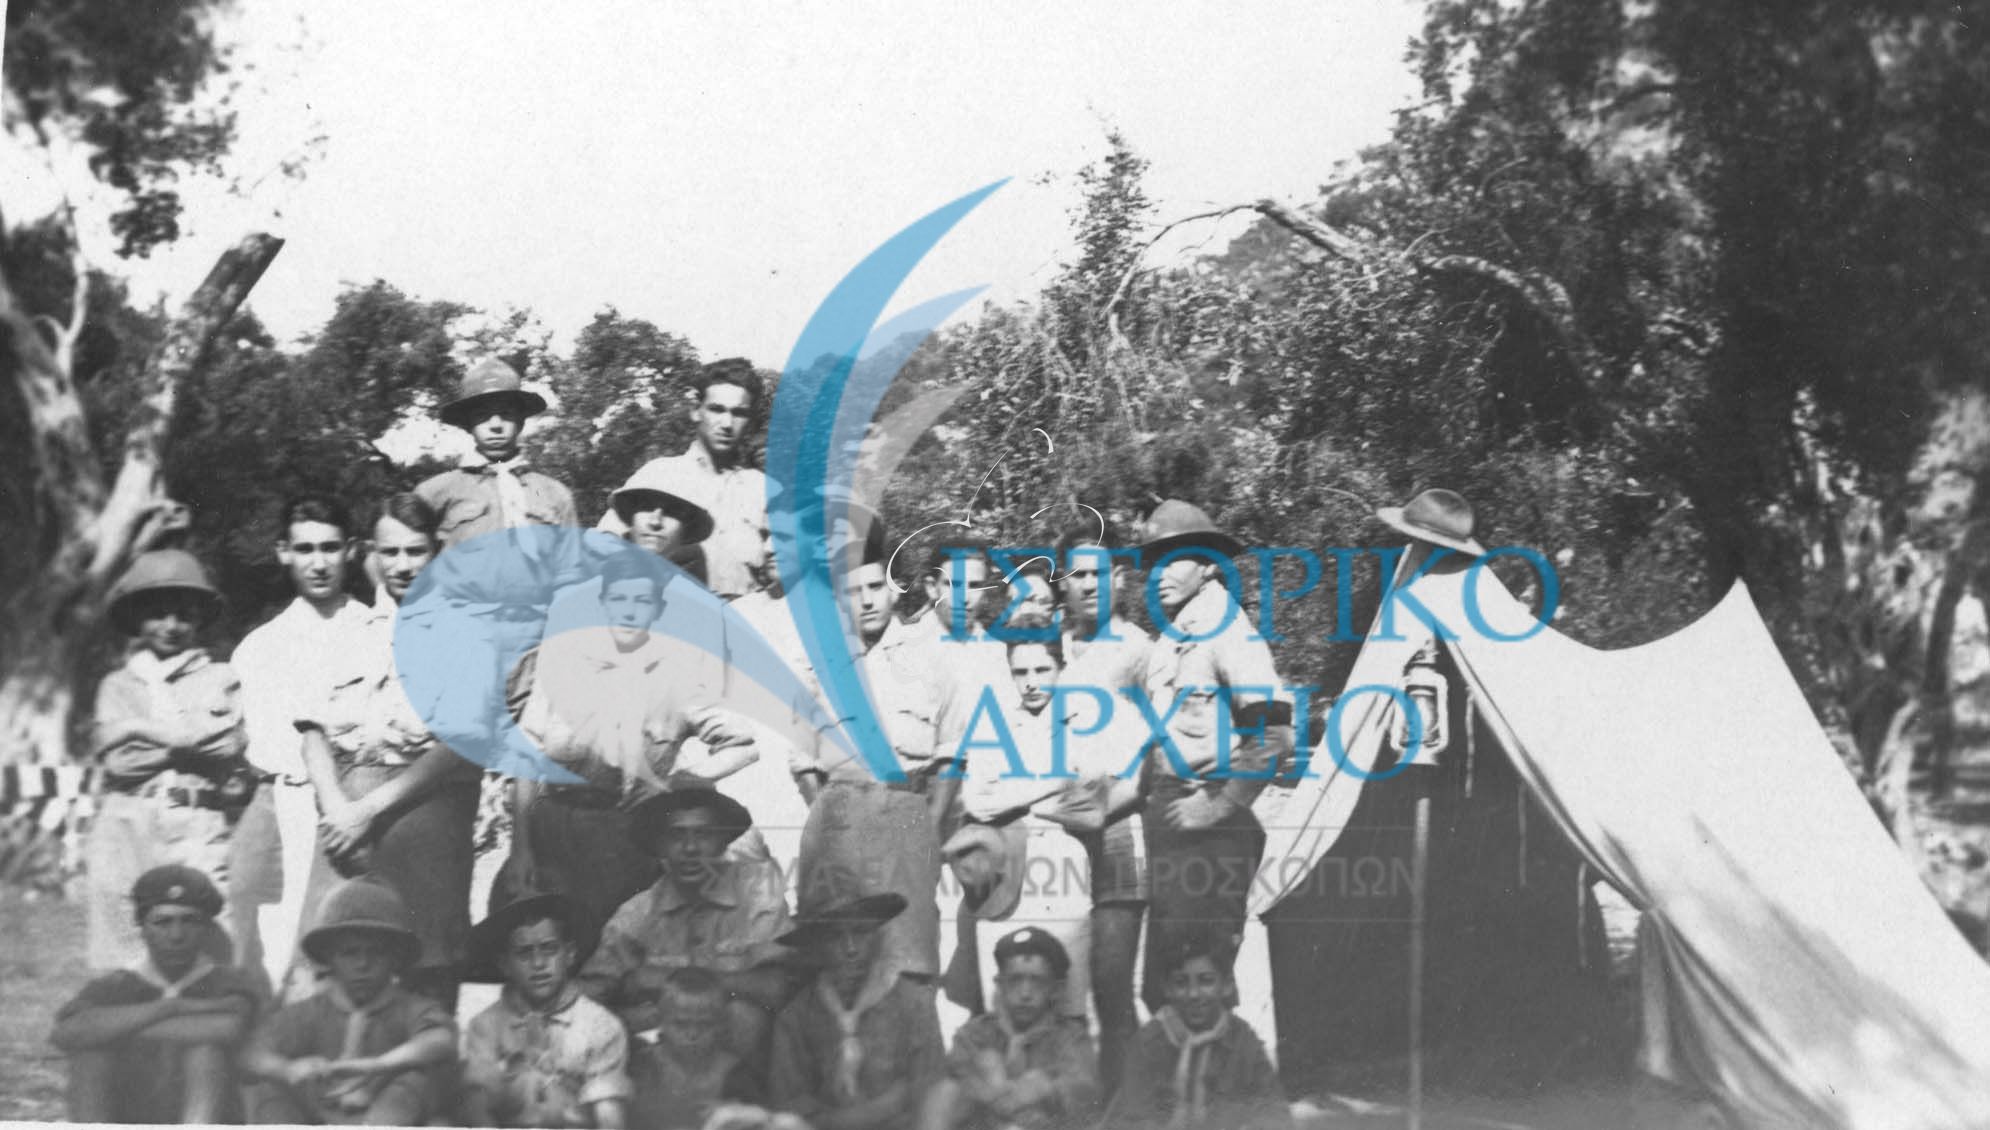 Η 2η Ομάδα προσκόπων Κέρκυρας σε εκδρομή στο Μπαρμπάτι από τις 27 μέχρι τις 29-8-1929